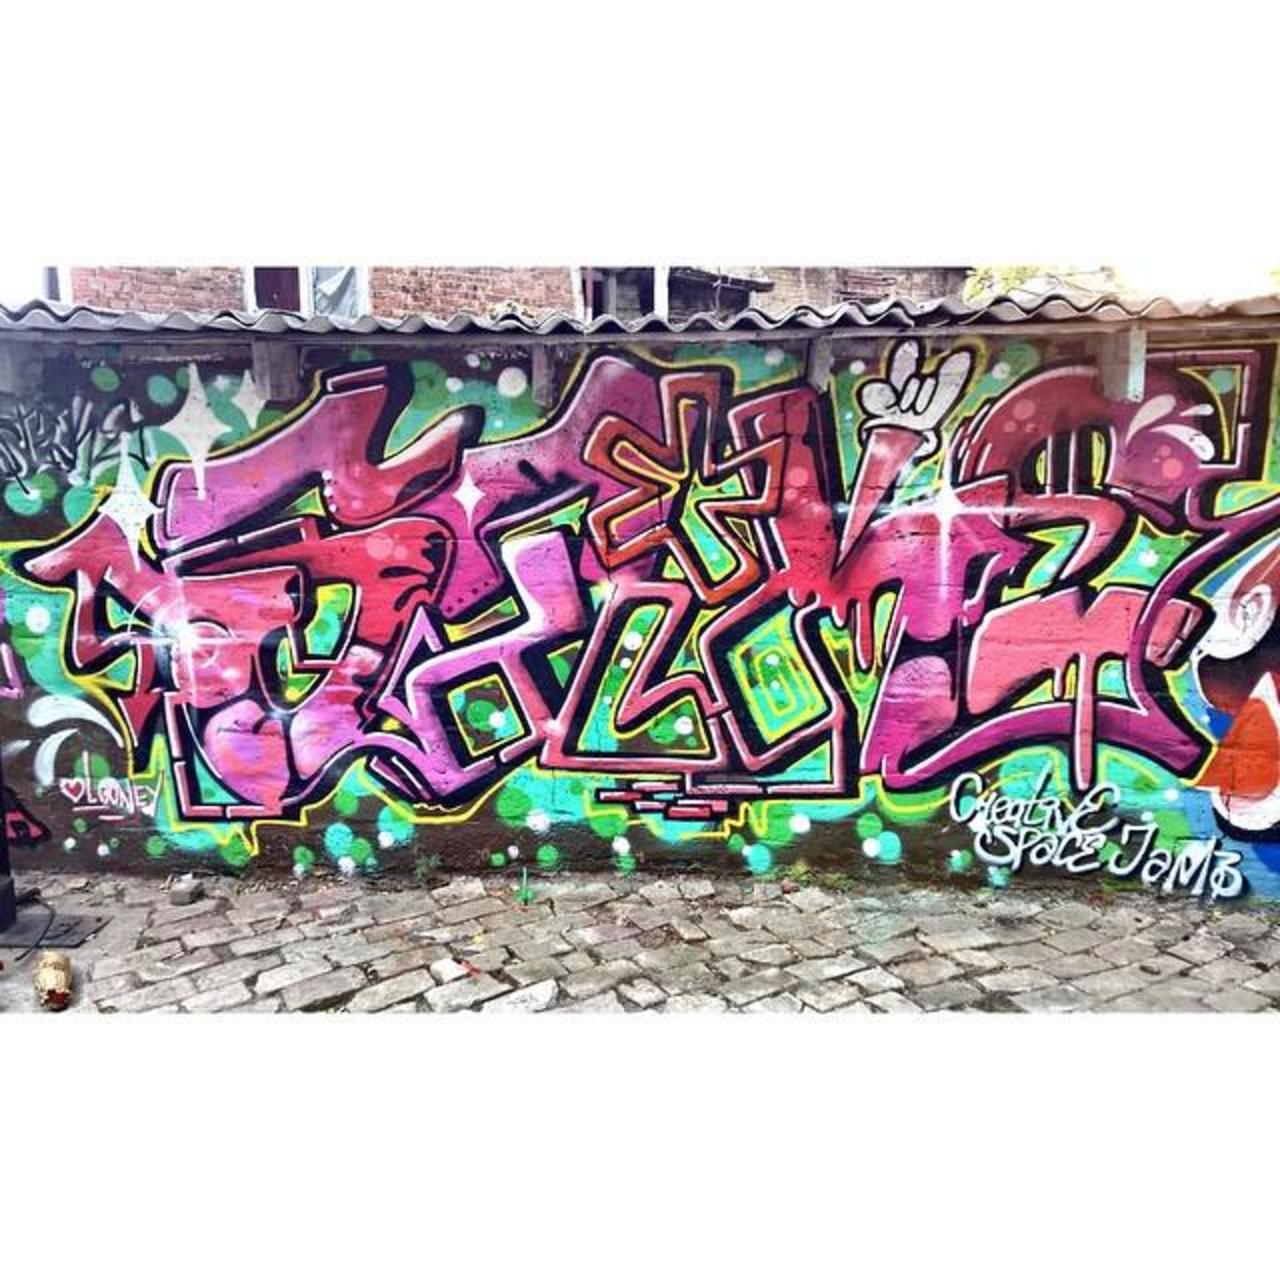 RT artpushr: via #stike_the_fucka "http://bit.ly/1L012mI" #graffiti #streetart http://t.co/FjKi5XFrIQ https://goo.gl/7kifqw